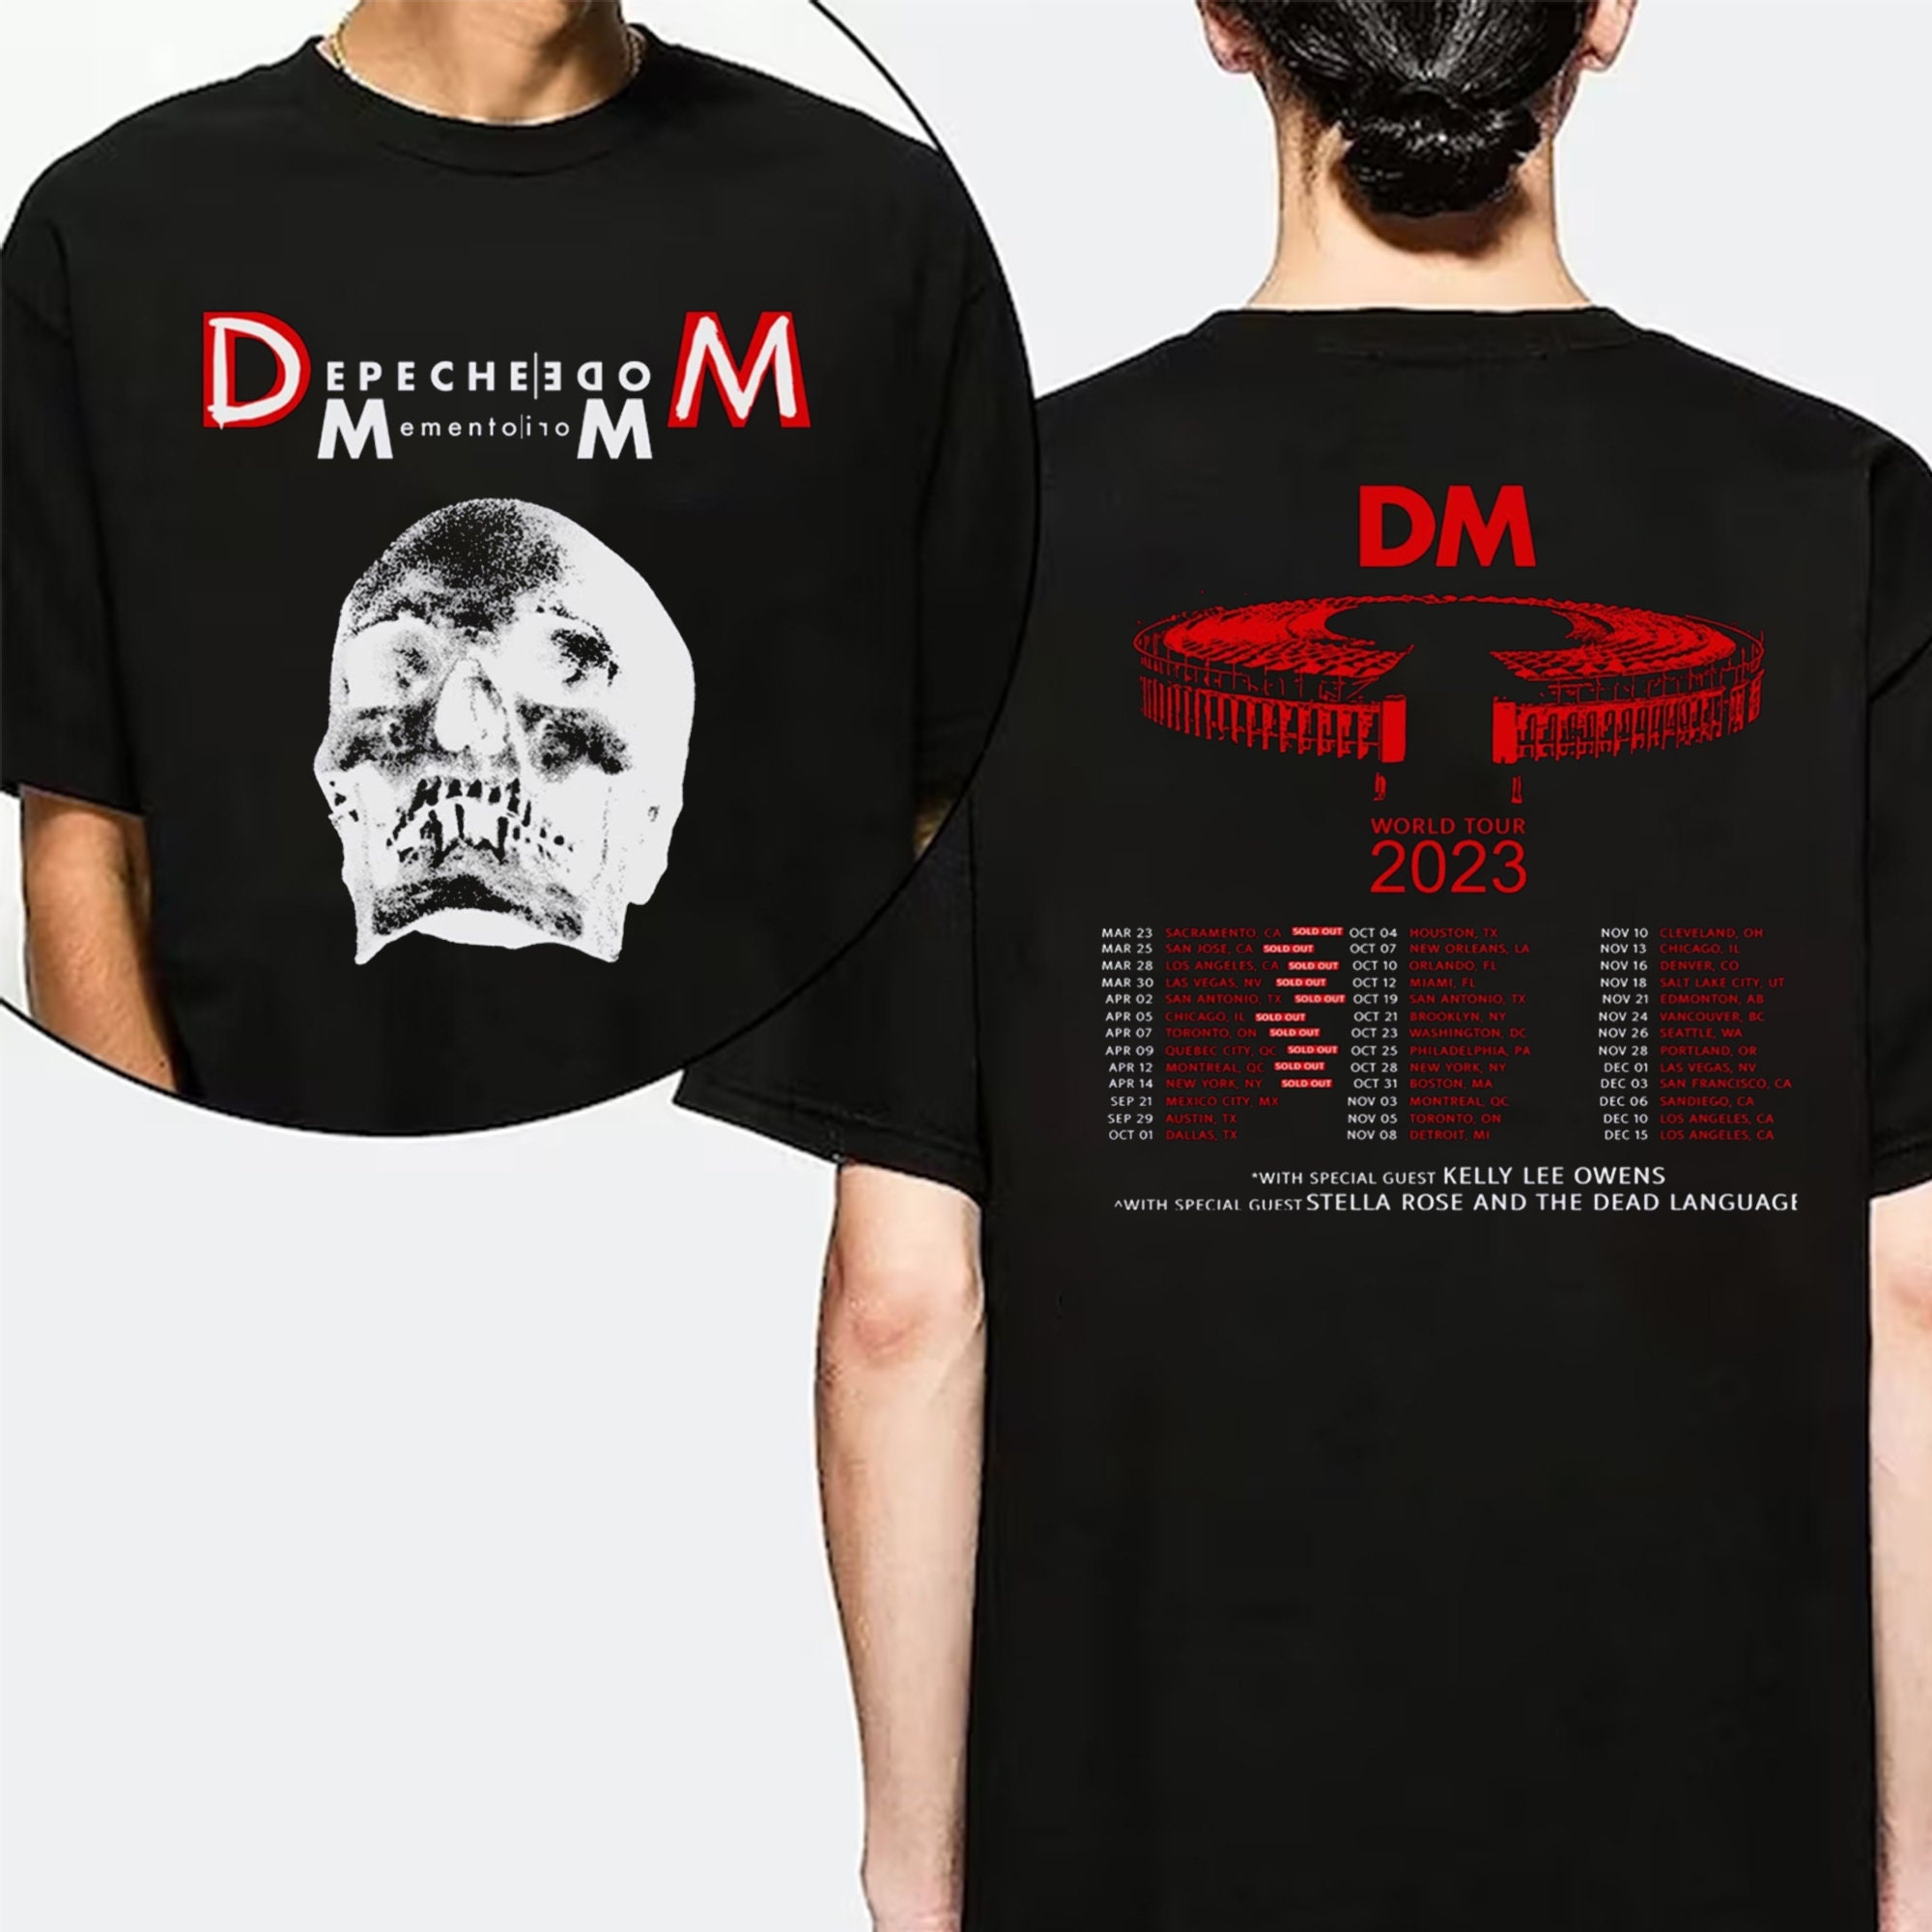 Depeche Mode Memento Mori World Tour 2023 t-shirt by To-Tee